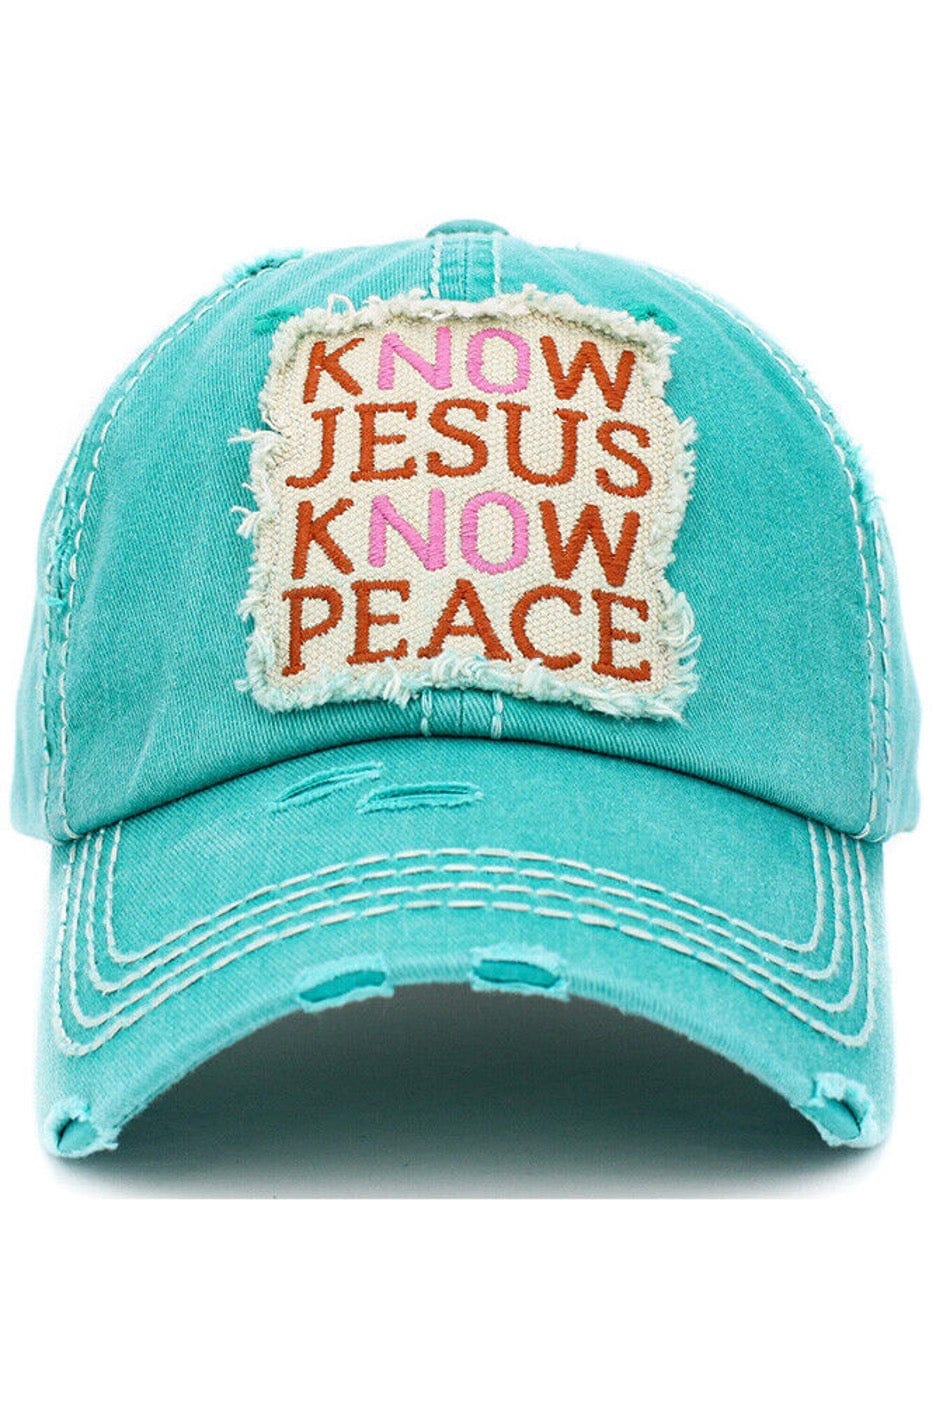 KBETHOS- Jesus Hat - Cowtown Bling N Things